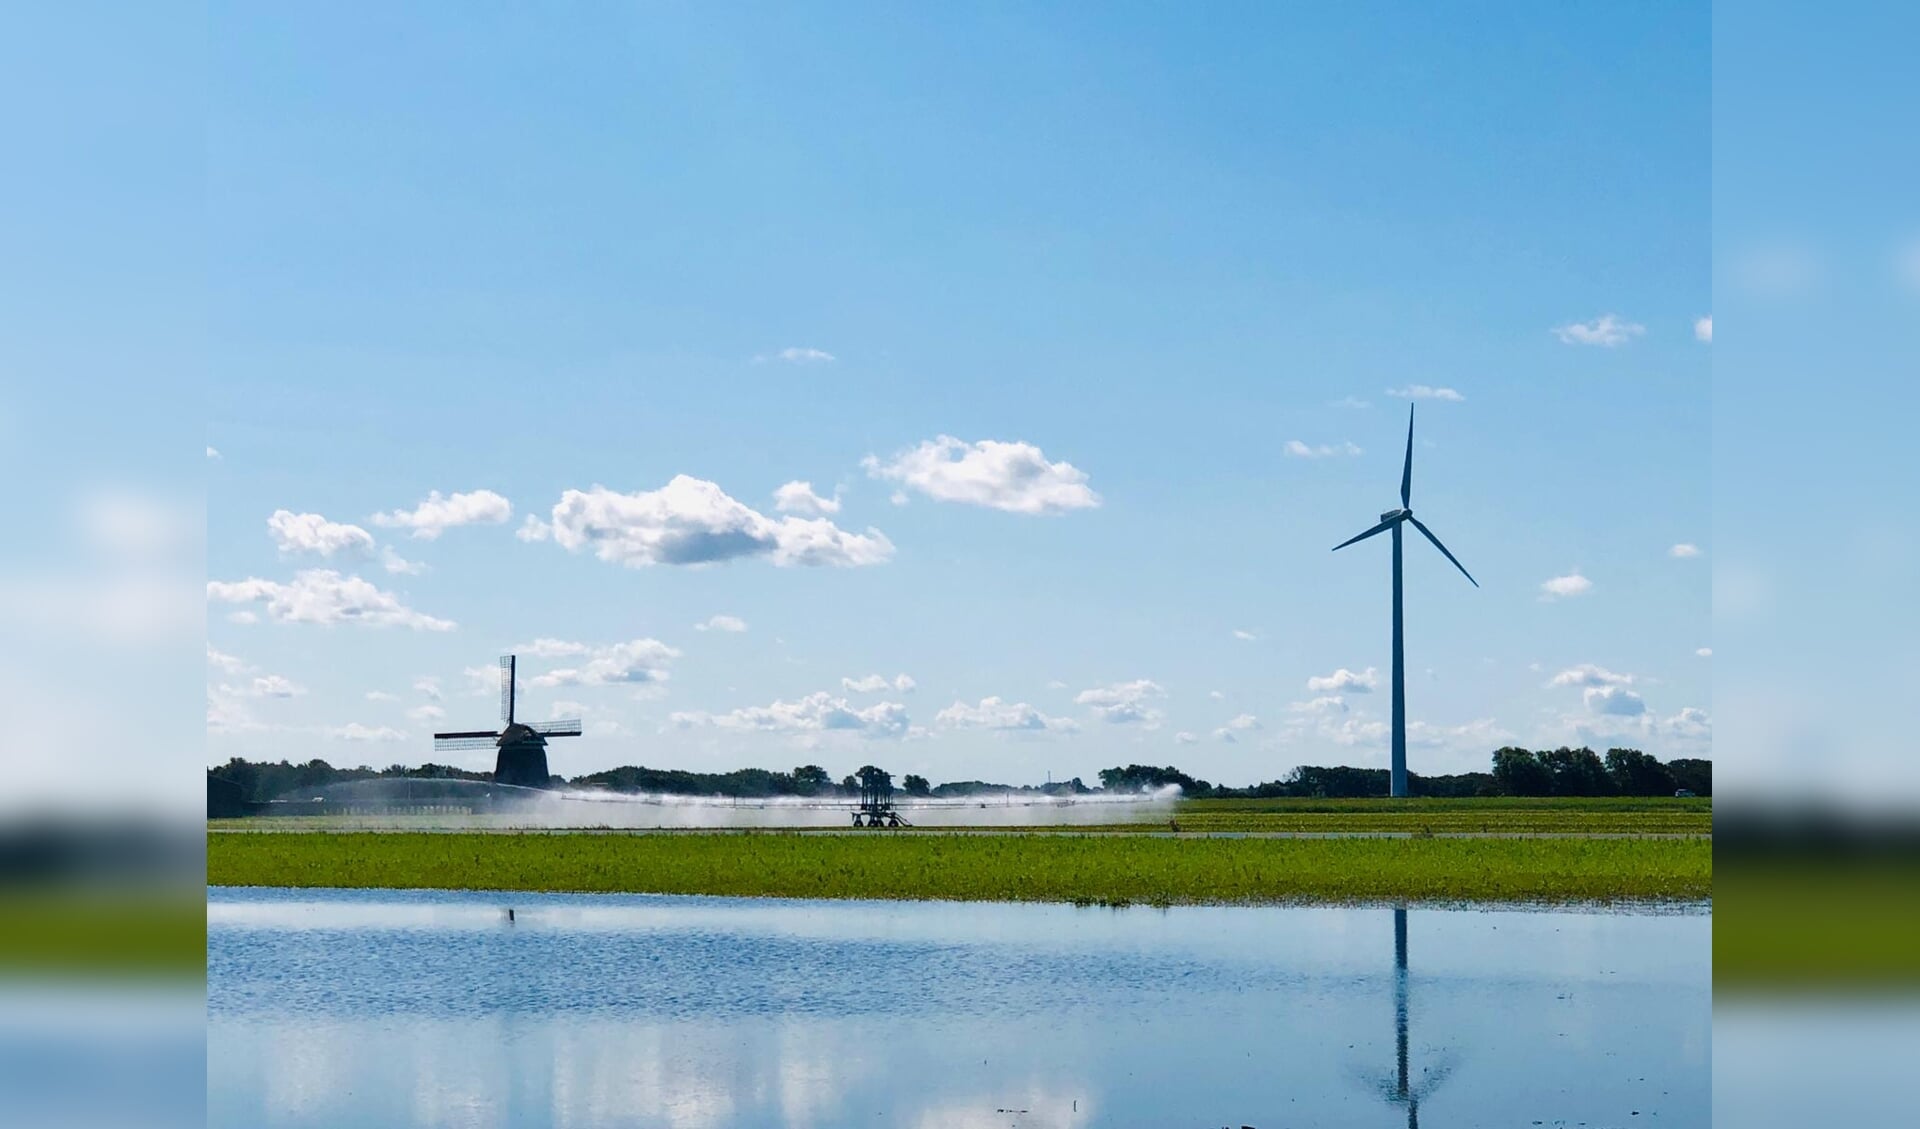 De gemeenteraad wil aan het roer blijven bij de keuze en vaststelling van zoeklocaties voor wind- en zonne-energie op het grondgebied van Lisse.